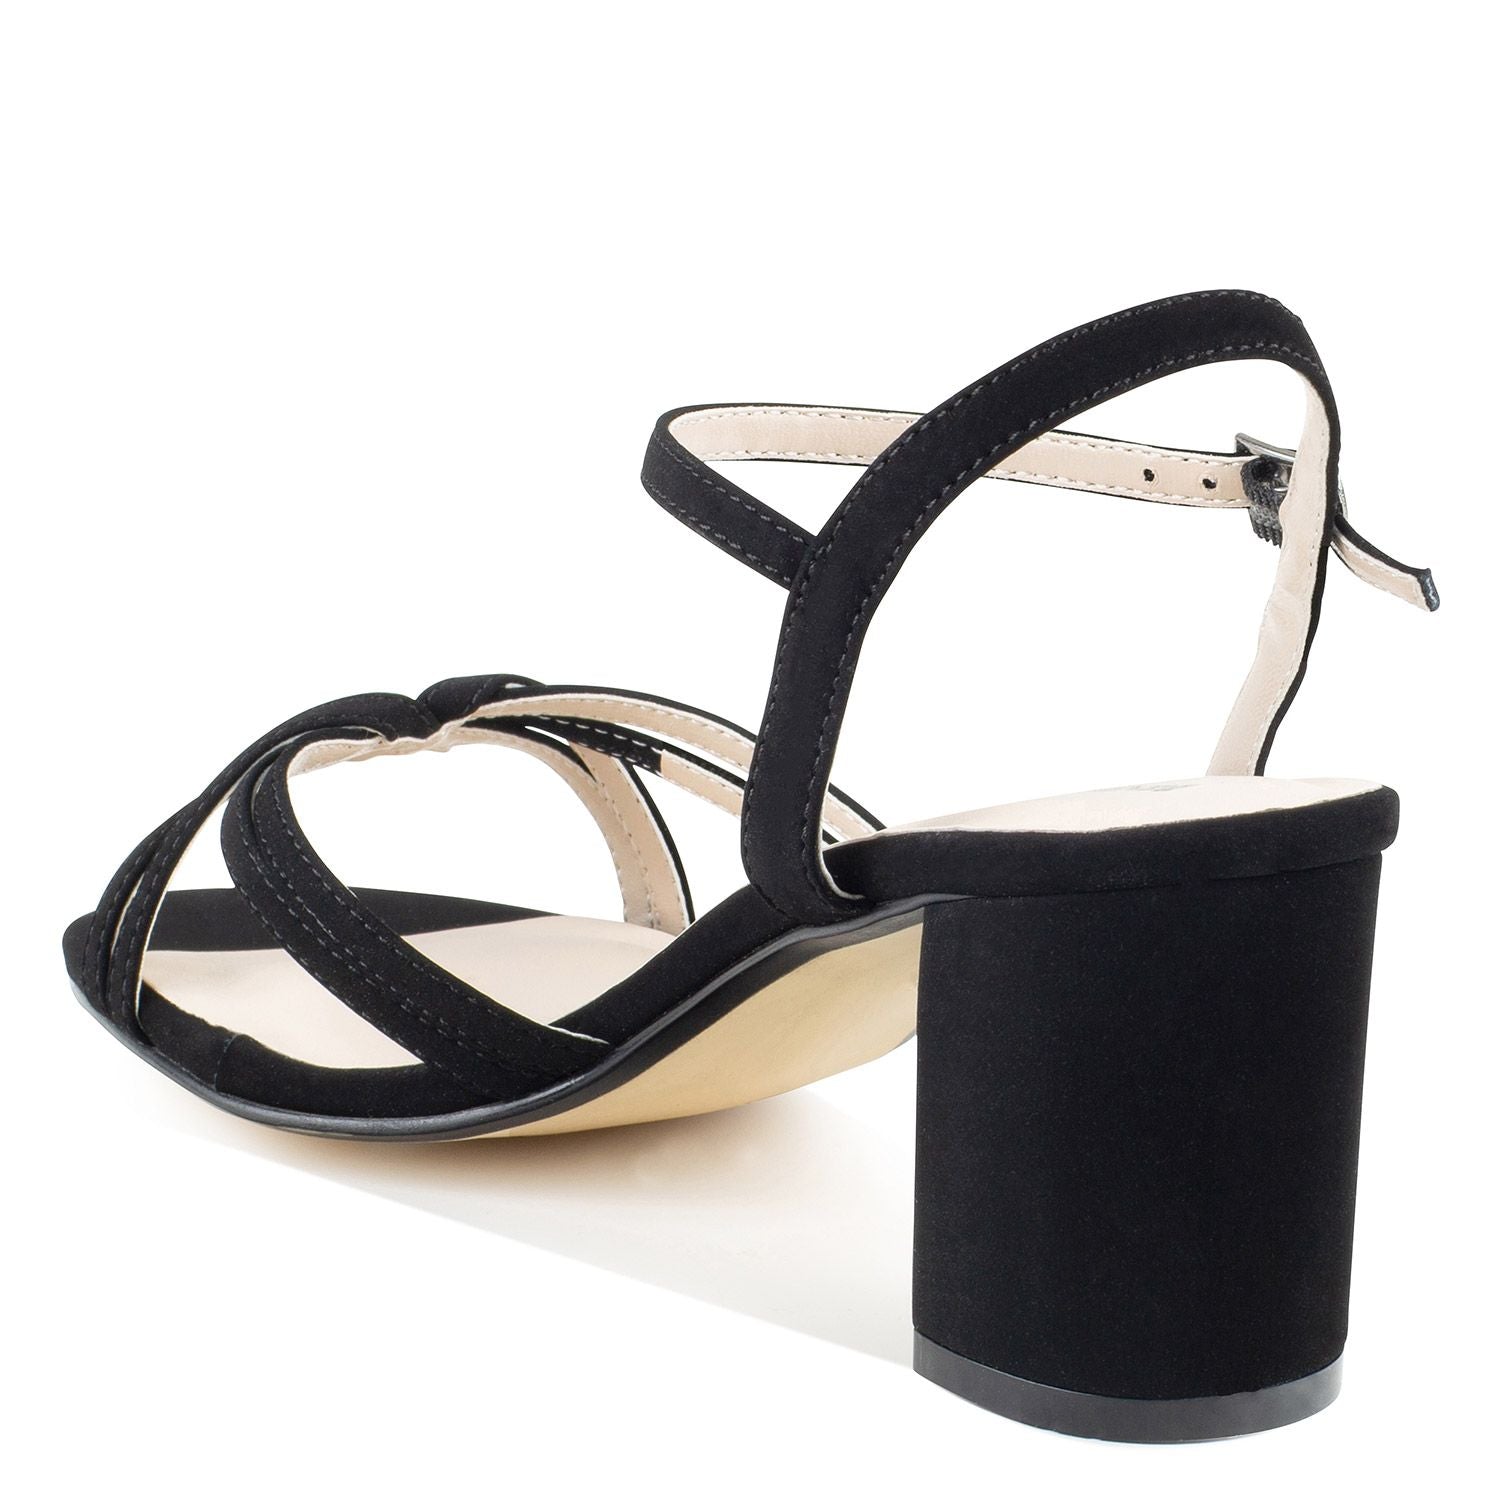 Left angle view of     Black glitter heel with 2.25 block heel